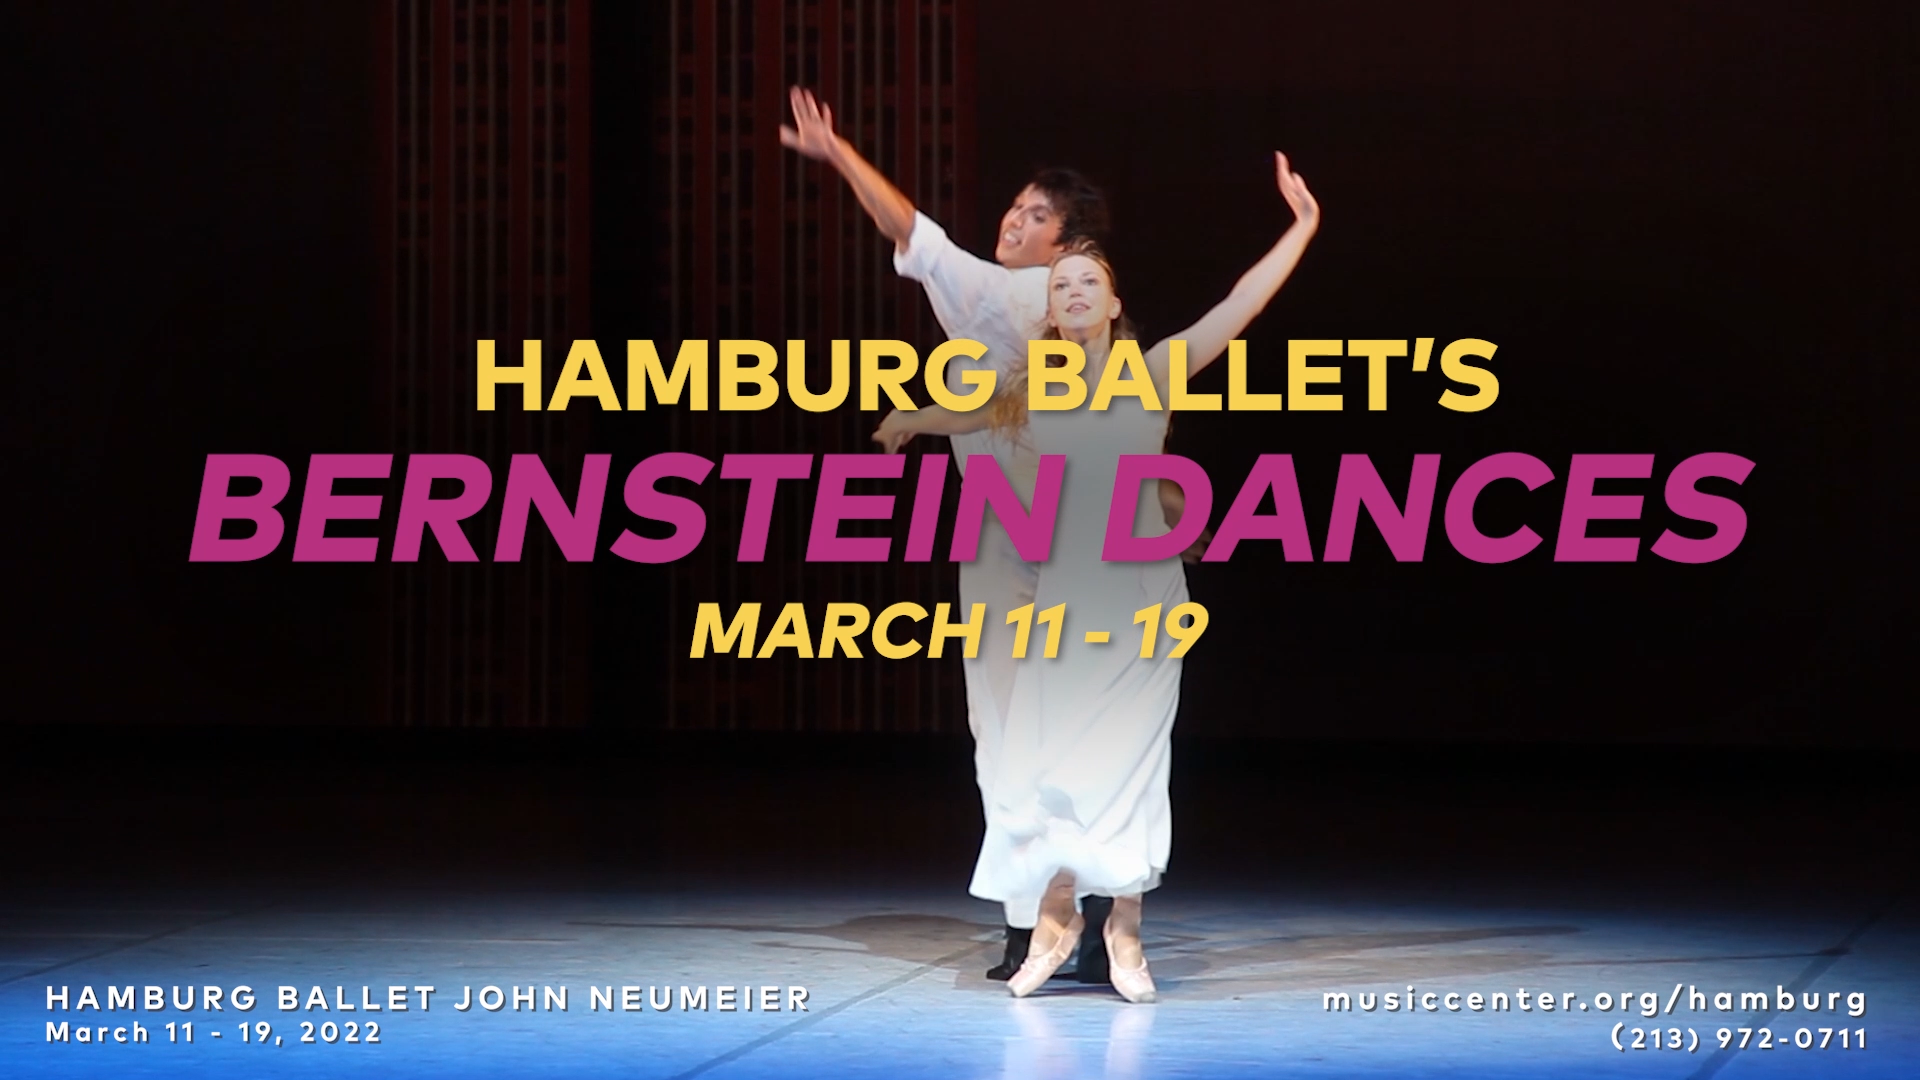 Get a taste of Hamburg Ballet John Neumeier in 'Bernstein Dances'